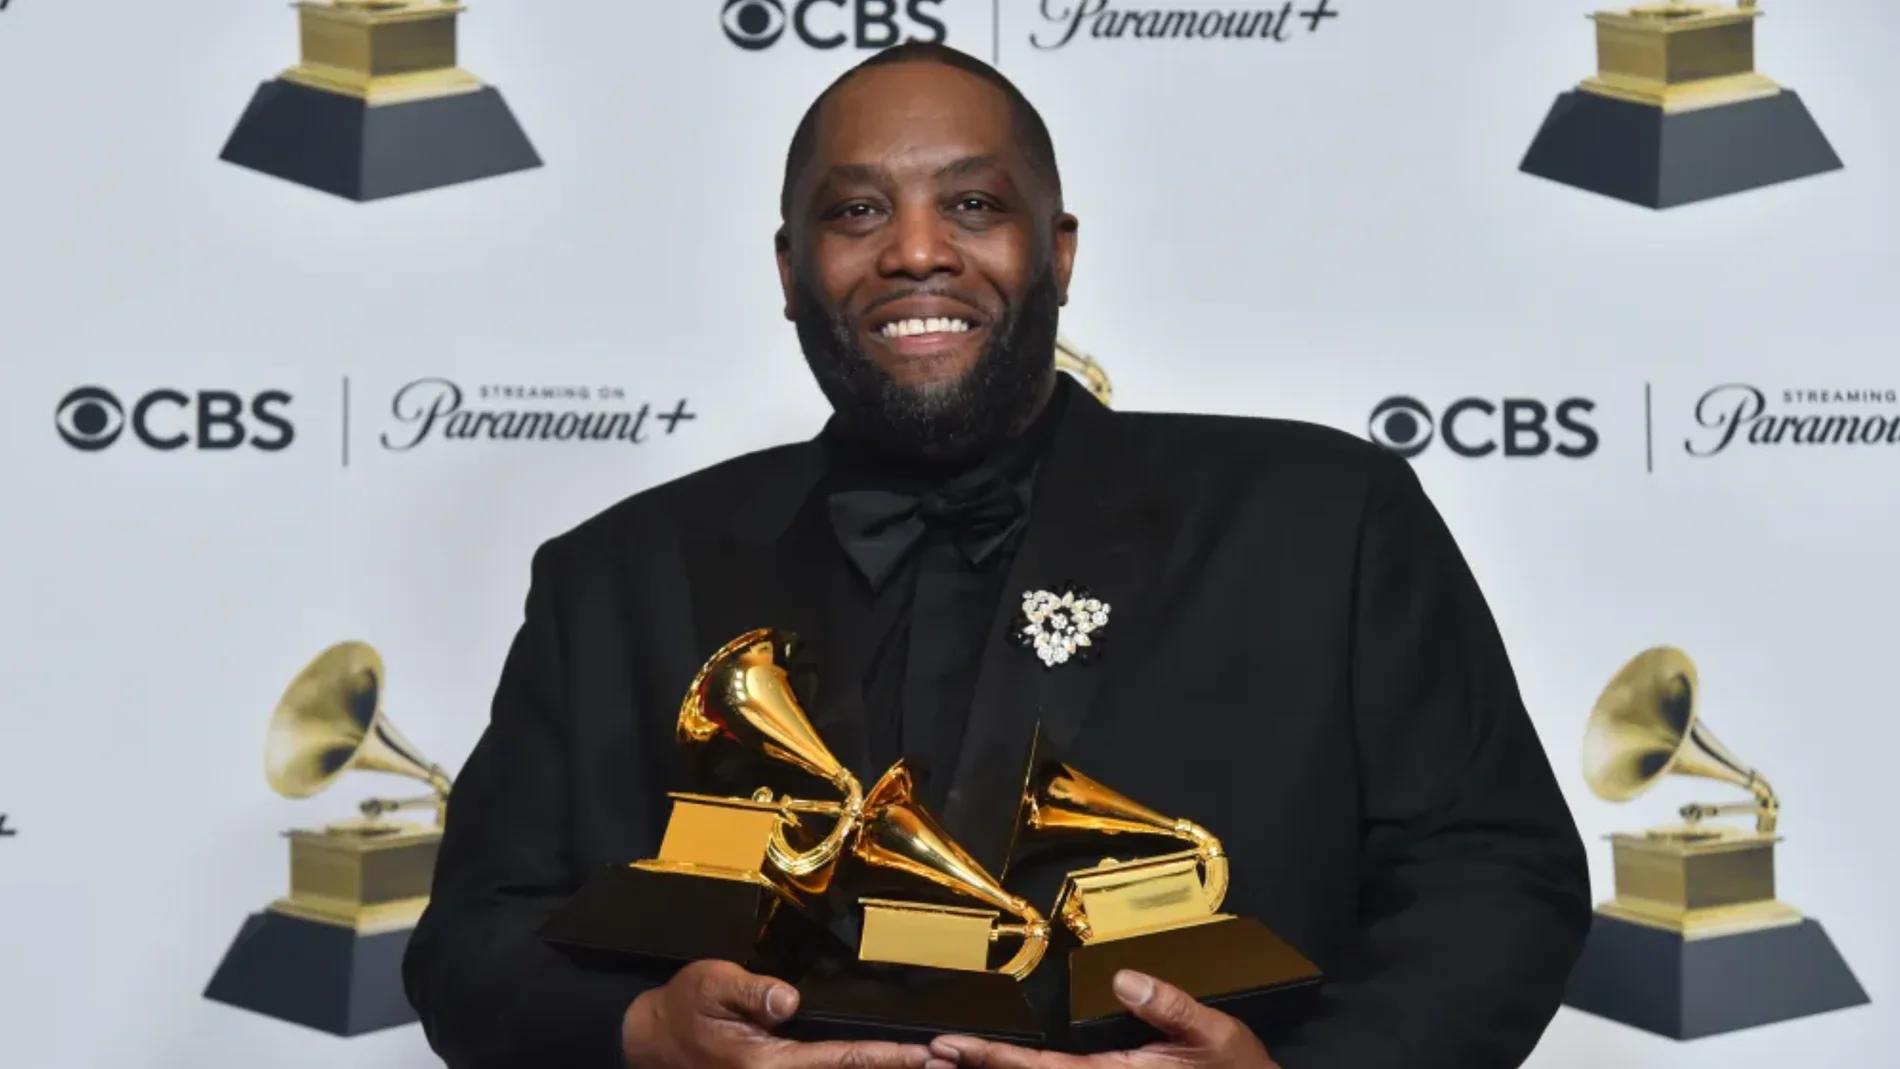 Según The Hollywood Reporter, el cantante fue arrestado por un cargo menor que no está relacionado con los Grammy